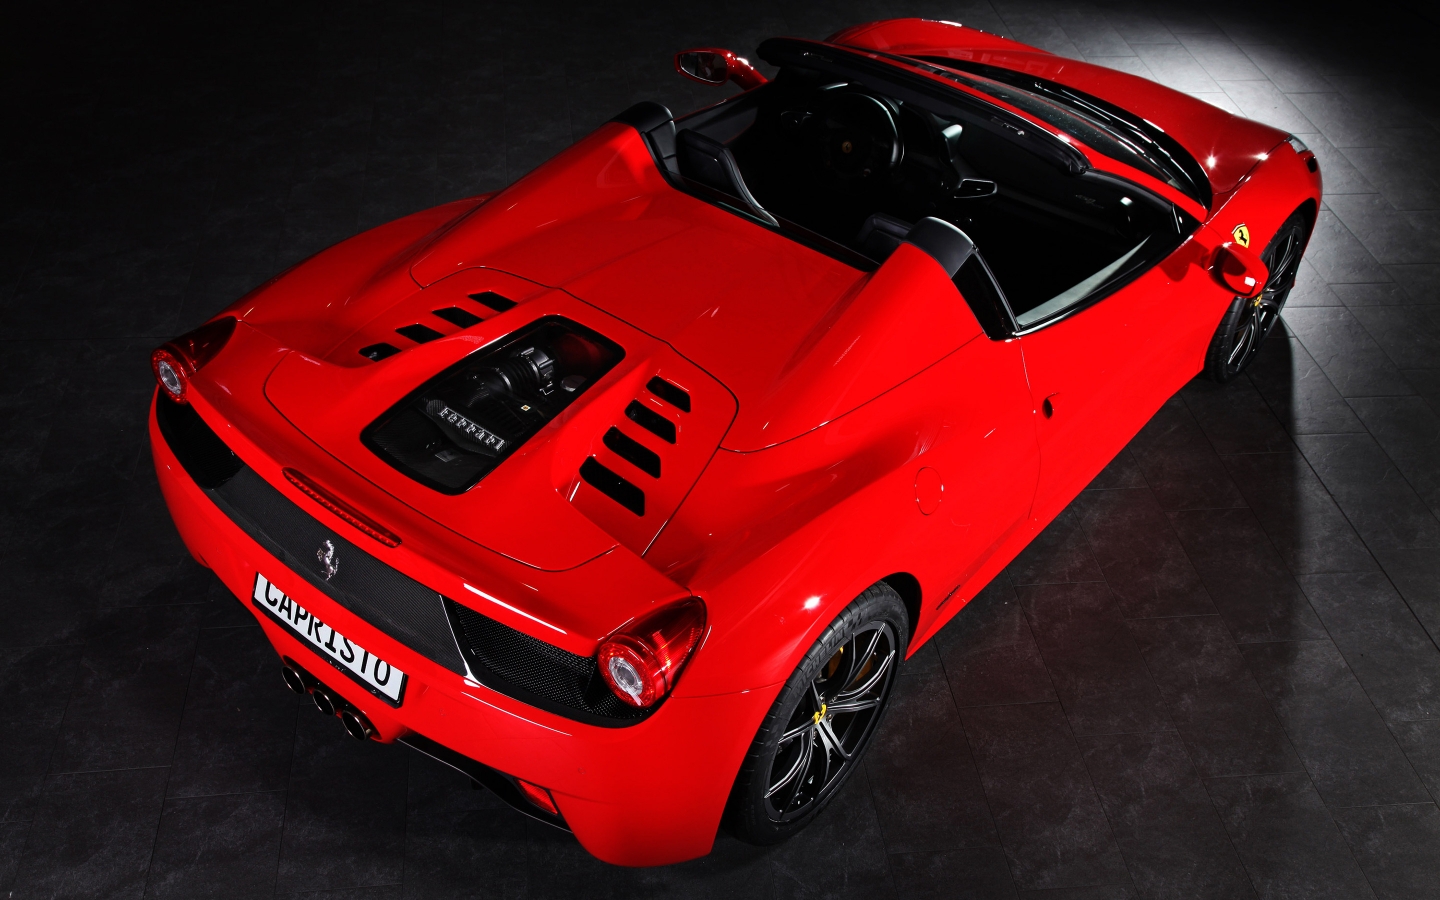 Capristo Ferrari 458 Spider for 1440 x 900 widescreen resolution